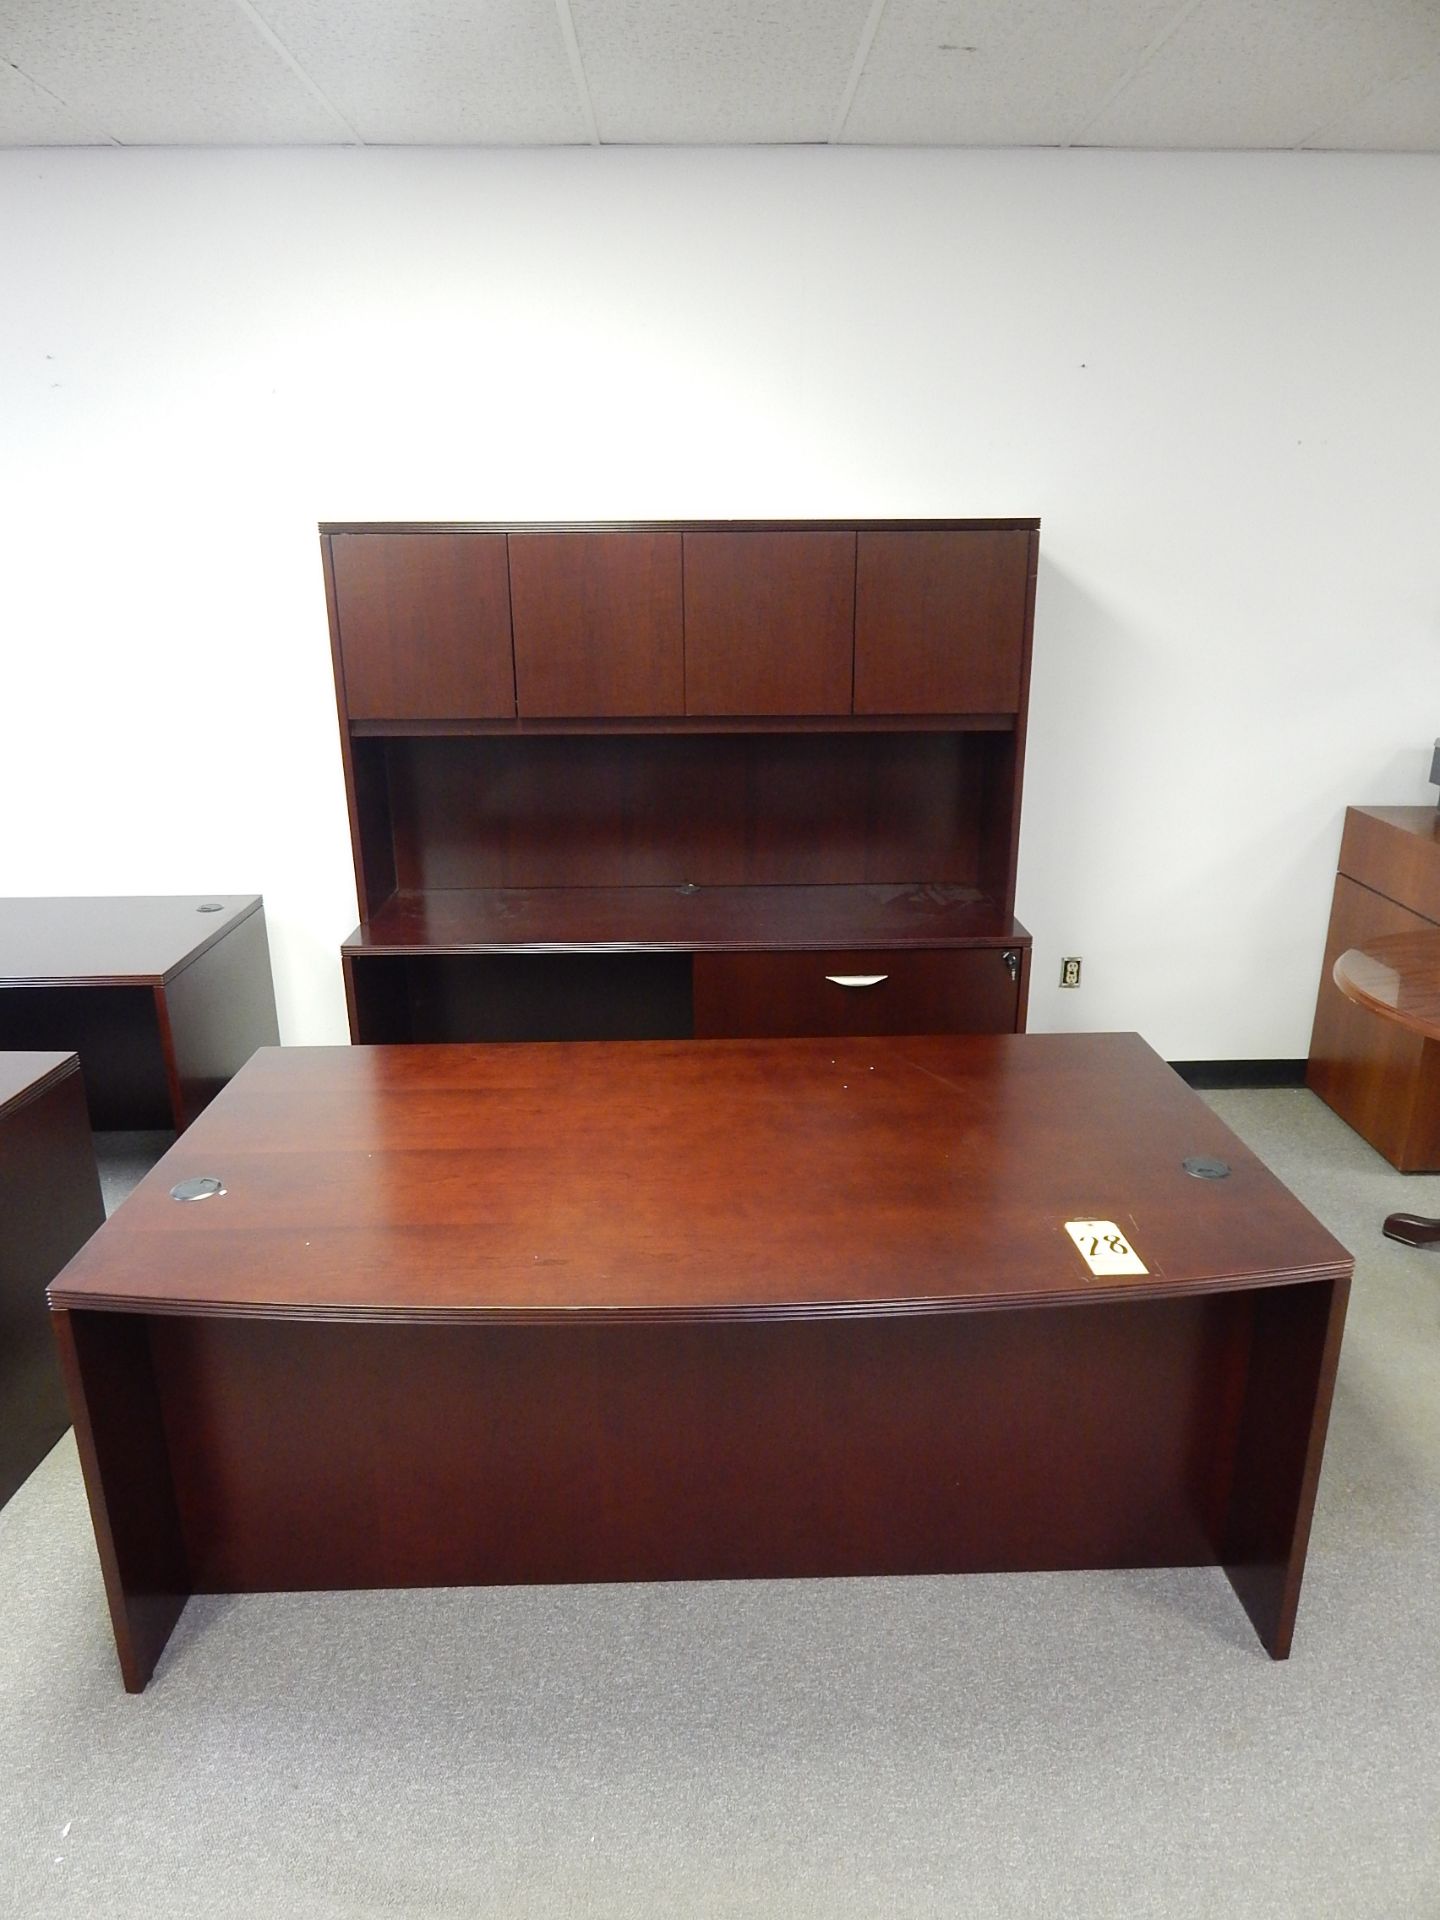 Ventnor Wood Veneer Desk, 72"W x 29"H & Credenza with Doors, 72"W x 70"H